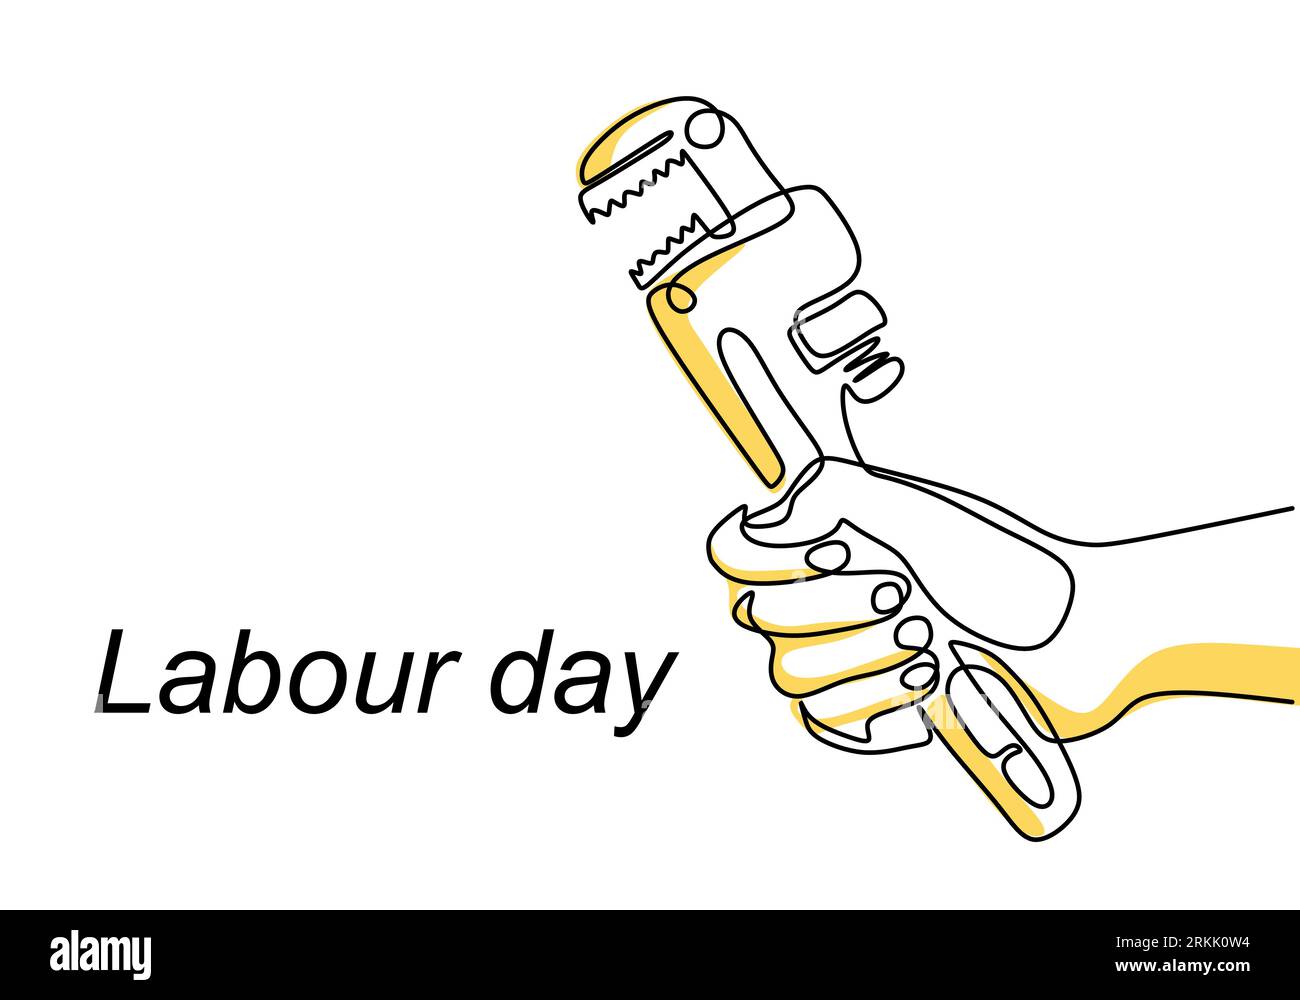 Labour Day | BukanPrincess-saigonsouth.com.vn